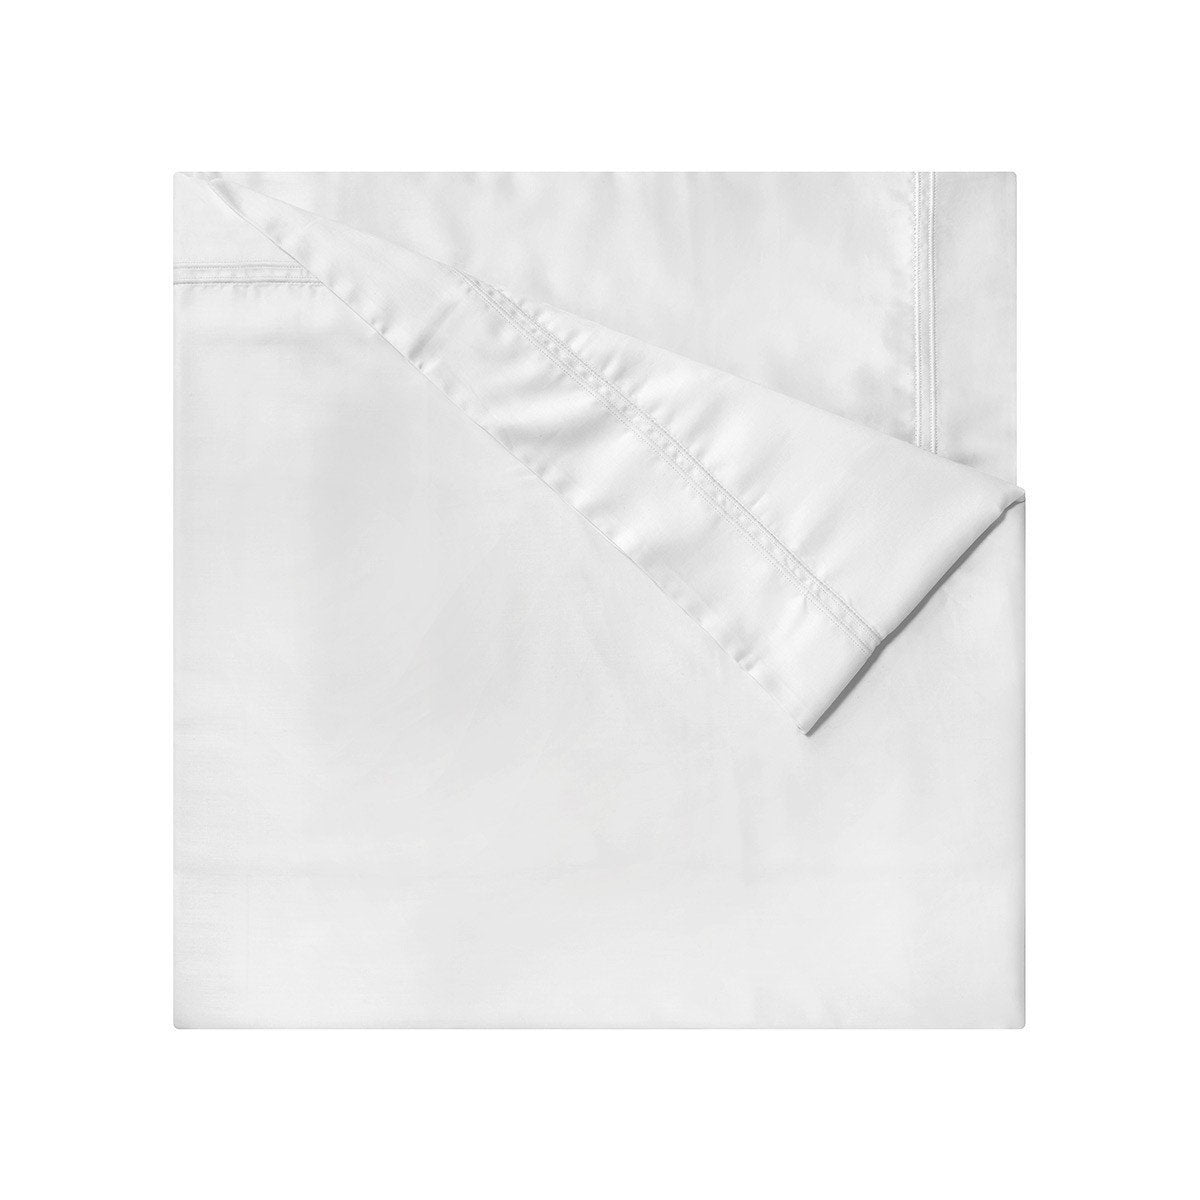 Fig Linens - Yves Delorme Triomphe Blanc Bedding - White Duvet